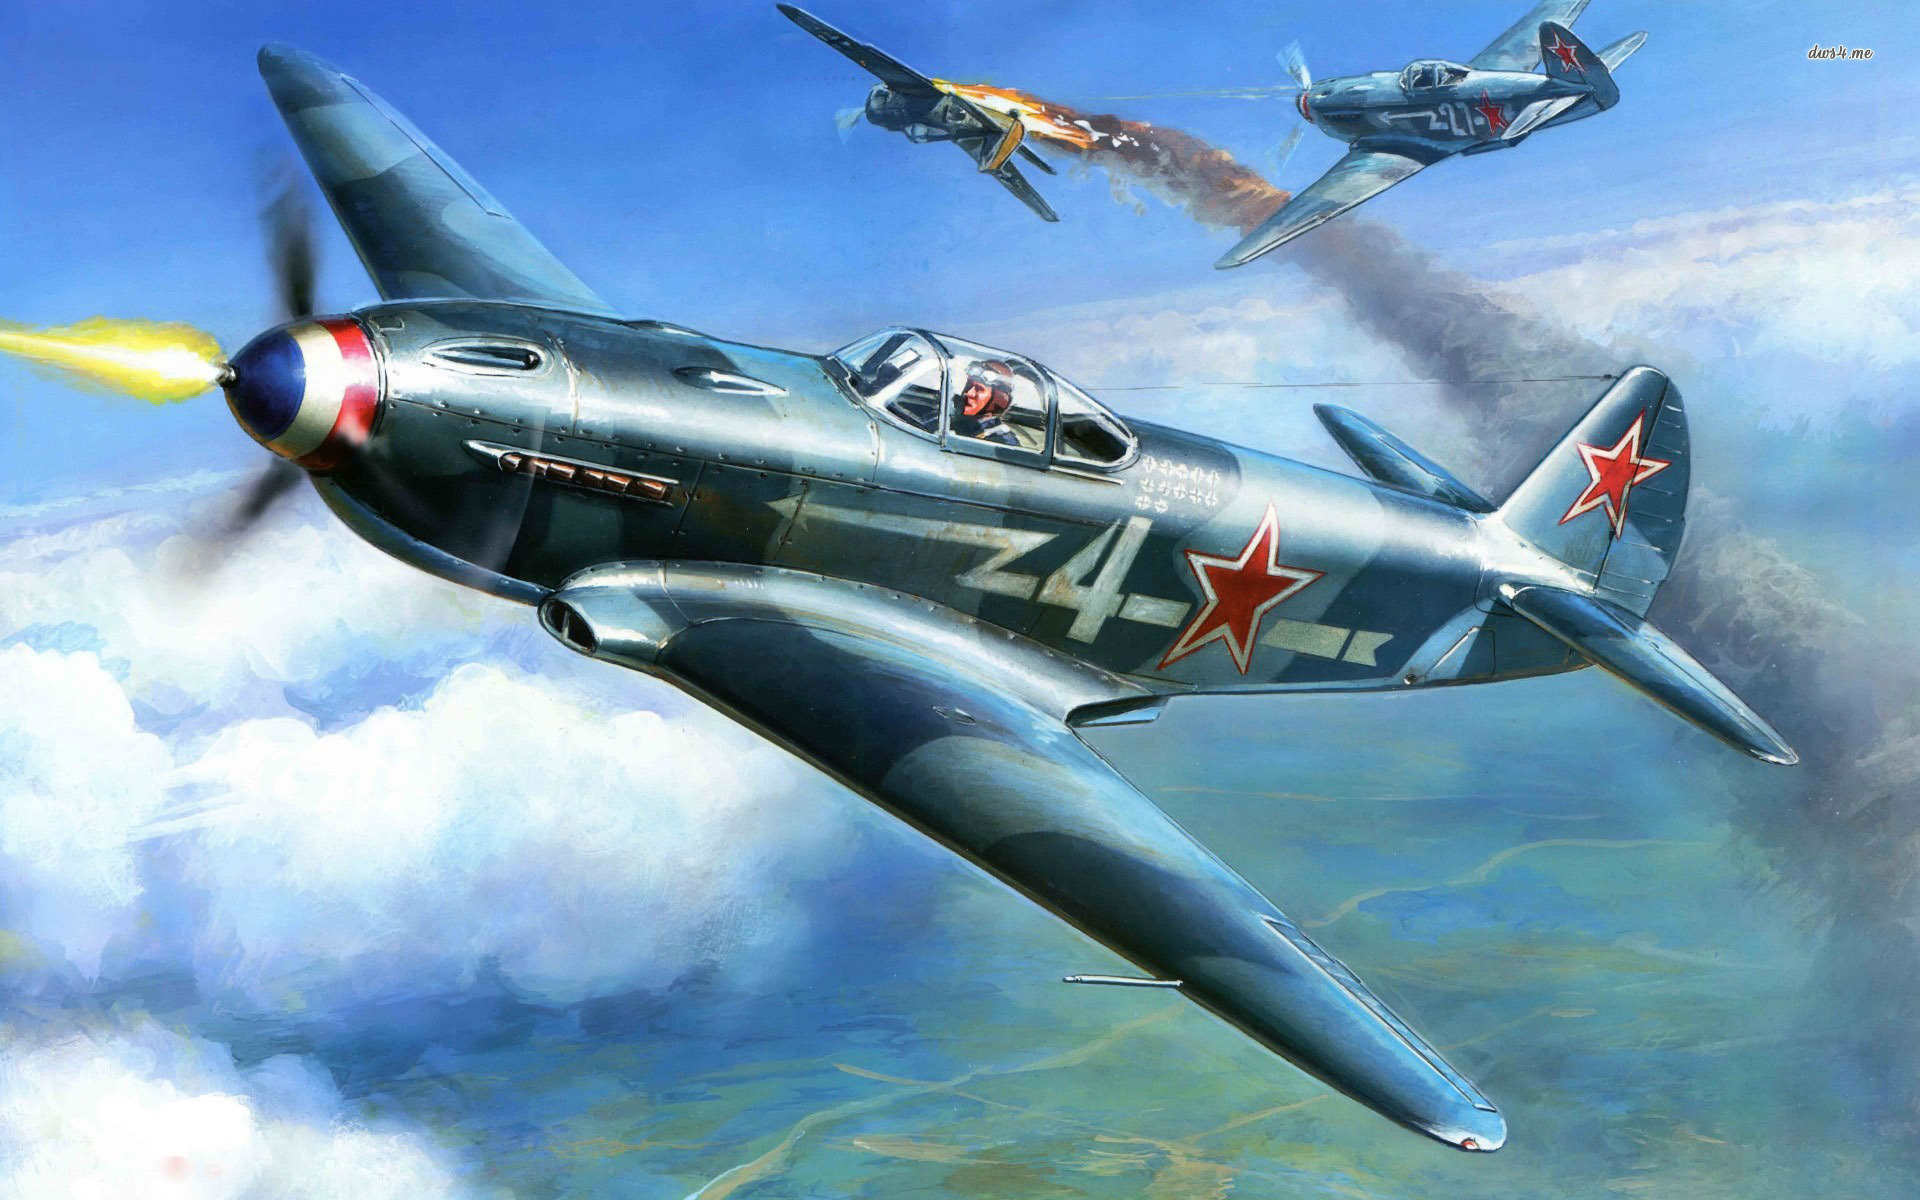 Yakovlev Yak-3 Backgrounds on Wallpapers Vista